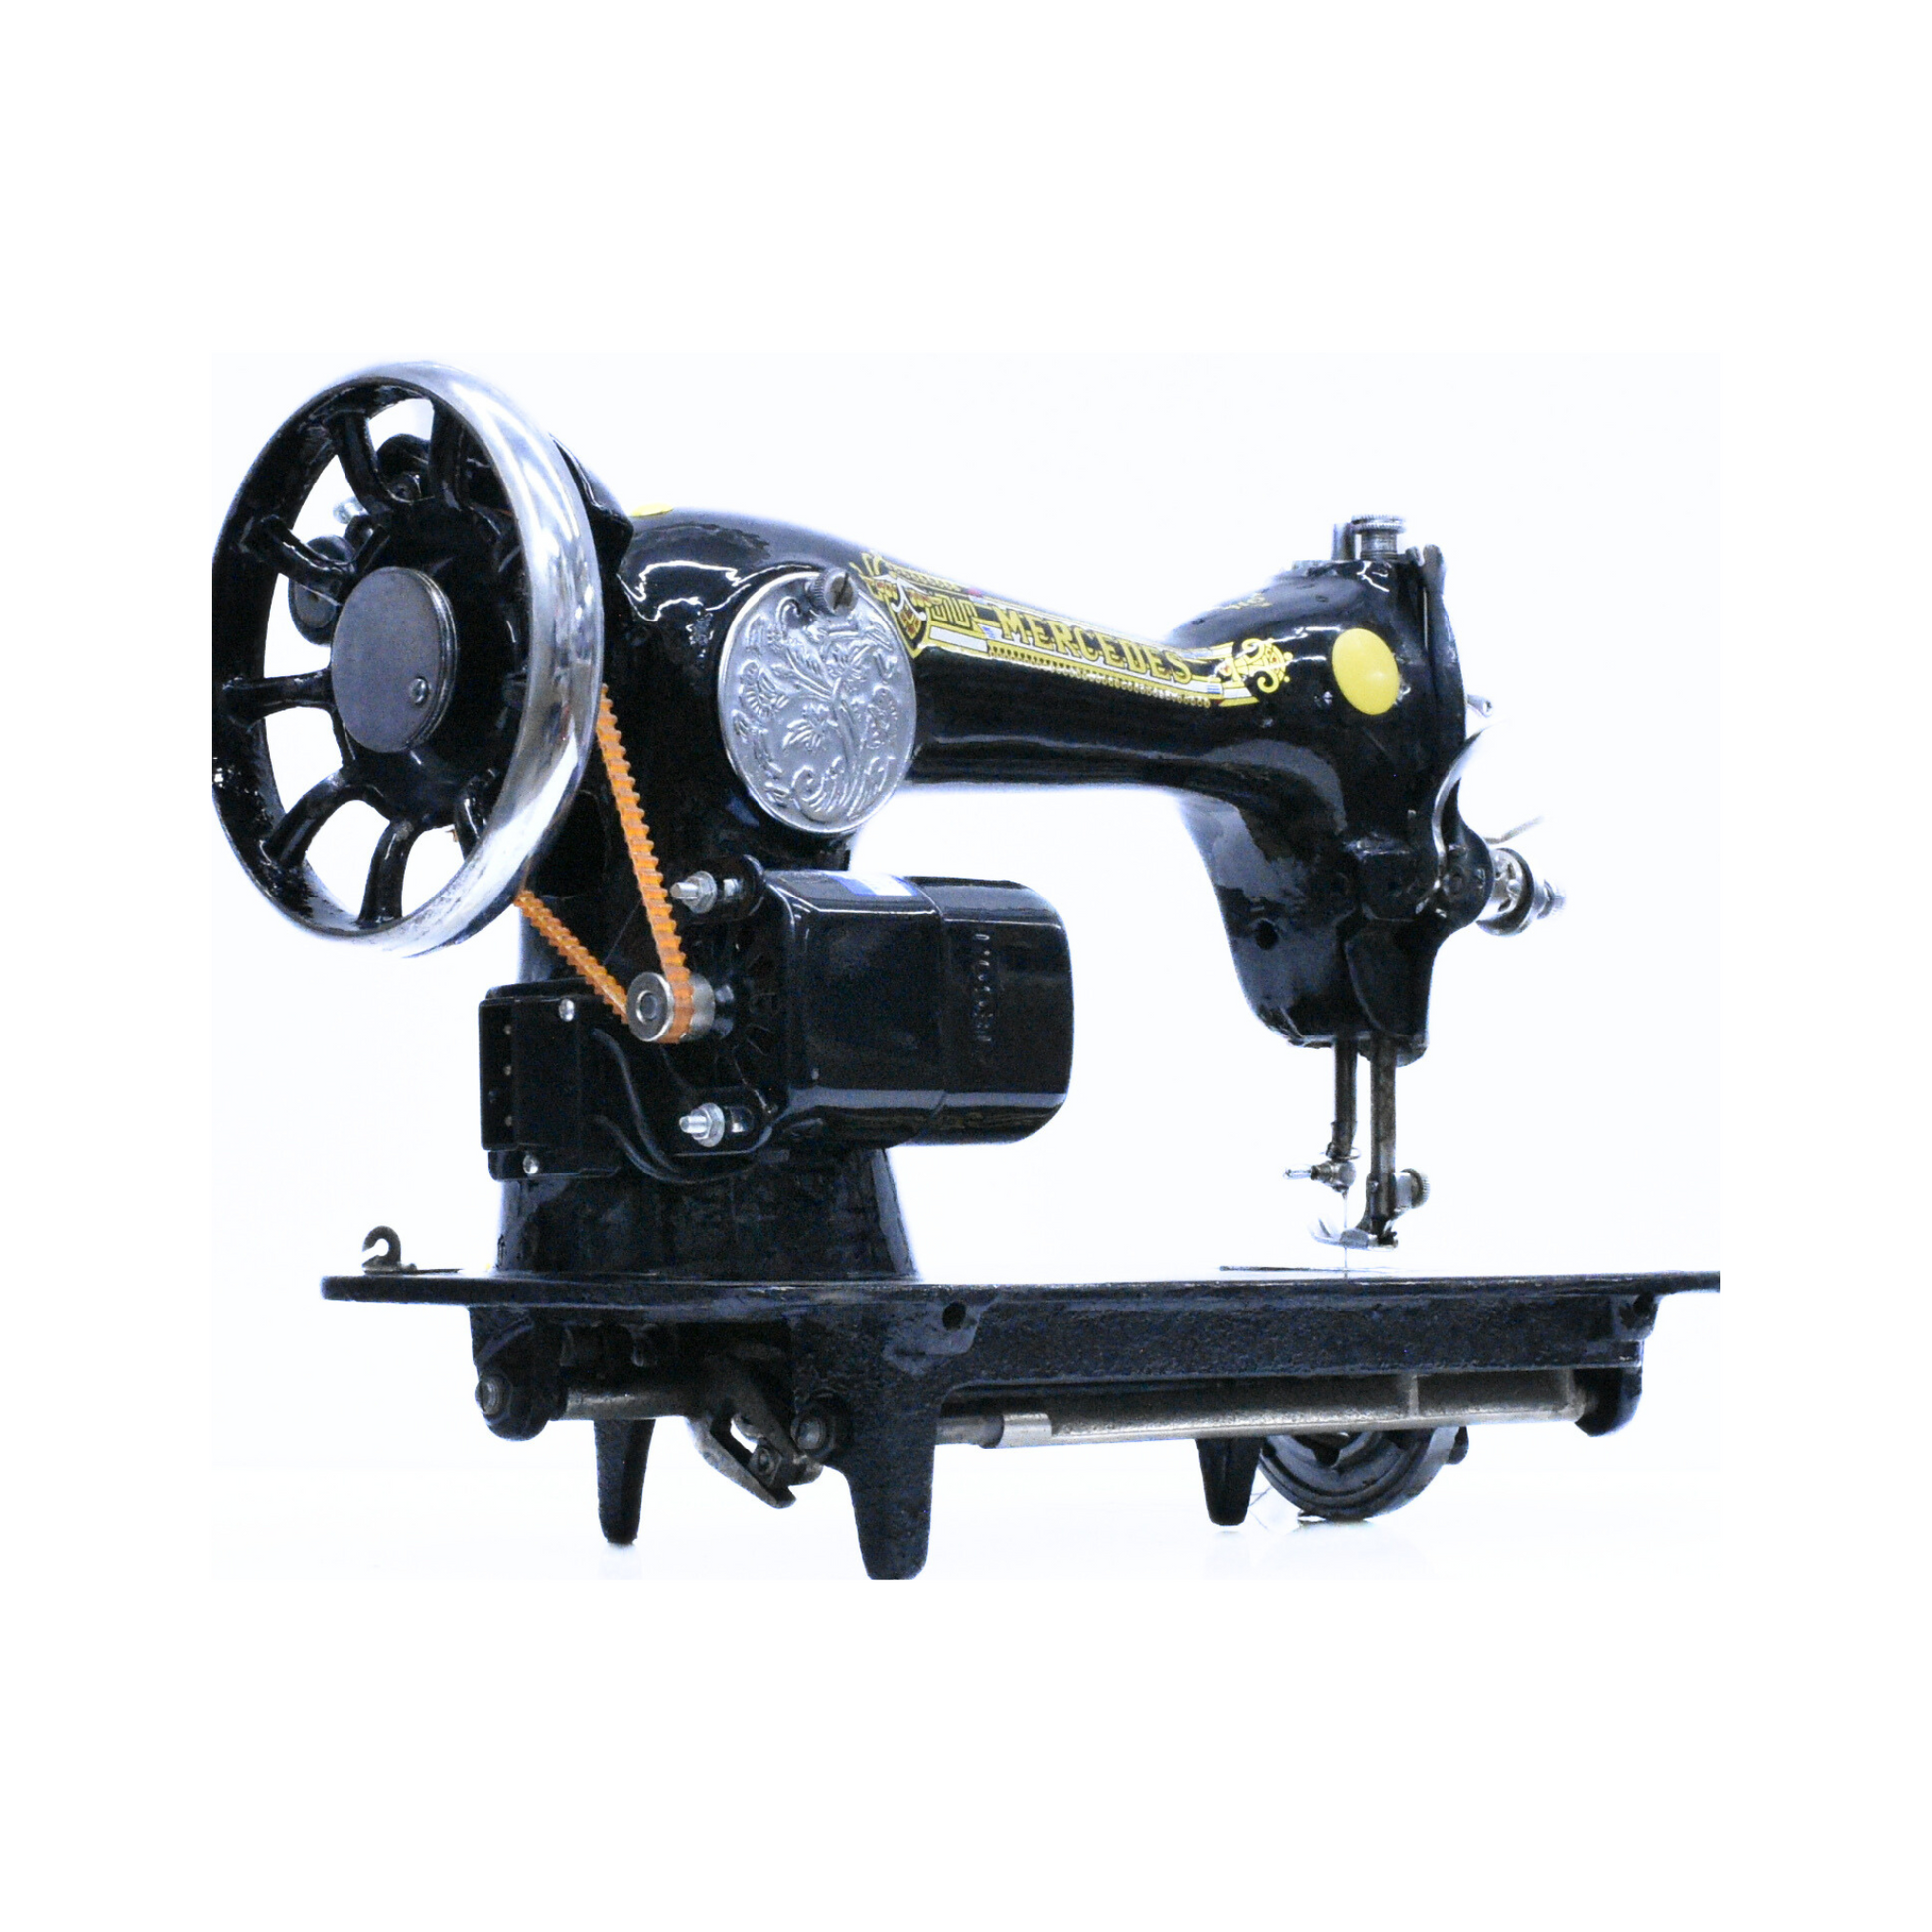 Mercedes - Vintage sewing machine - Black - Side view